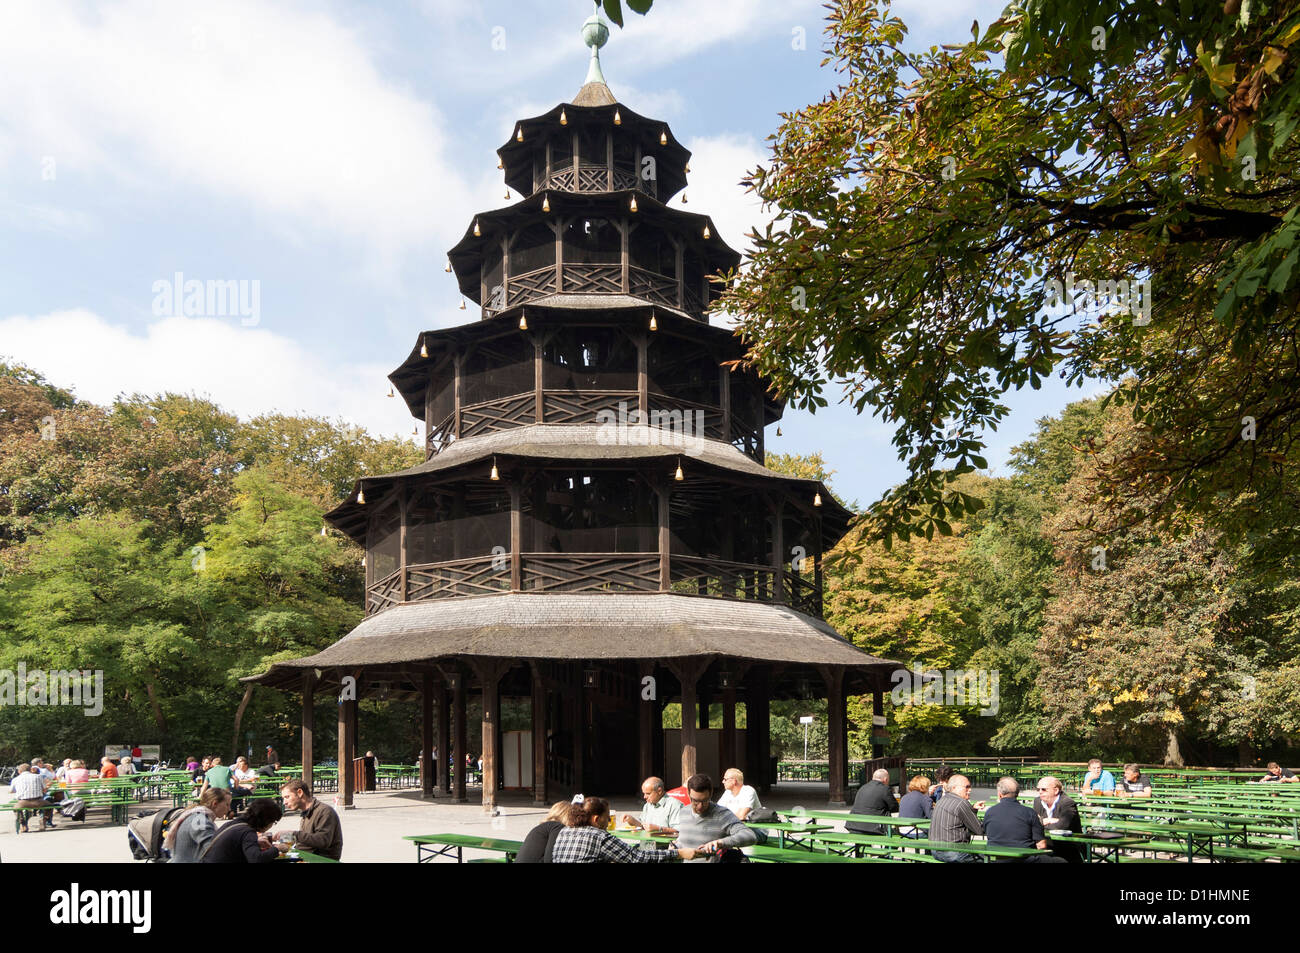 Chinesischer Turm mit Biergarten in Englischer Garten, Munich, Bavaria, Germany Stock Photo